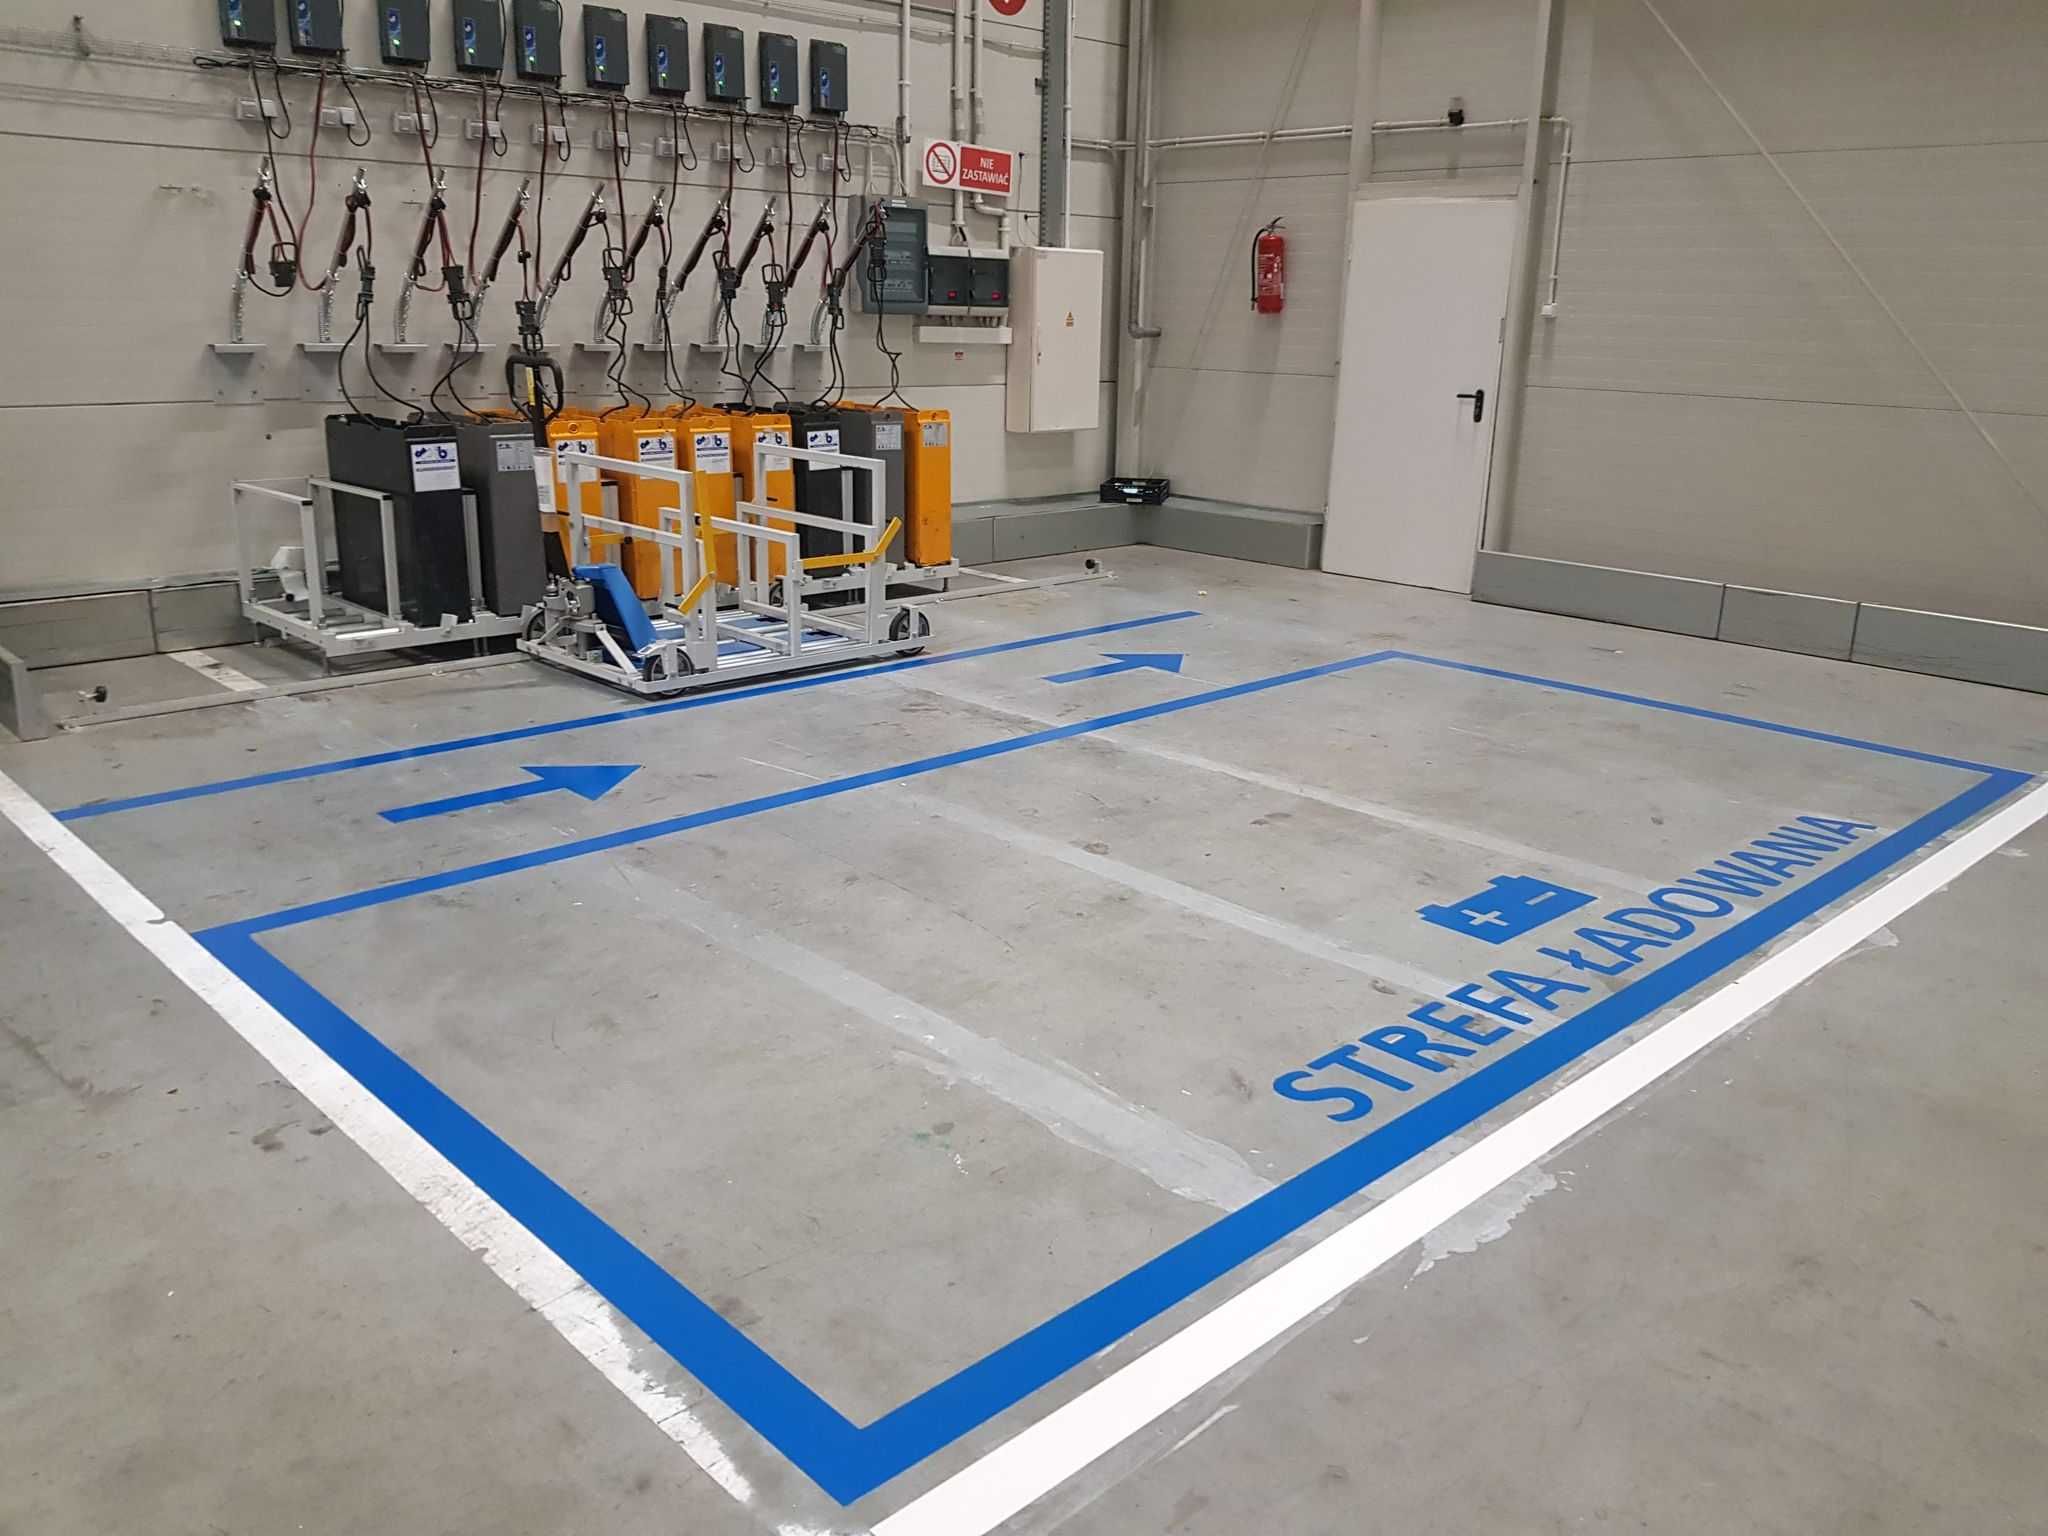 Malowanie linii oznakowanie poziome parking garaże podziemne magazyn